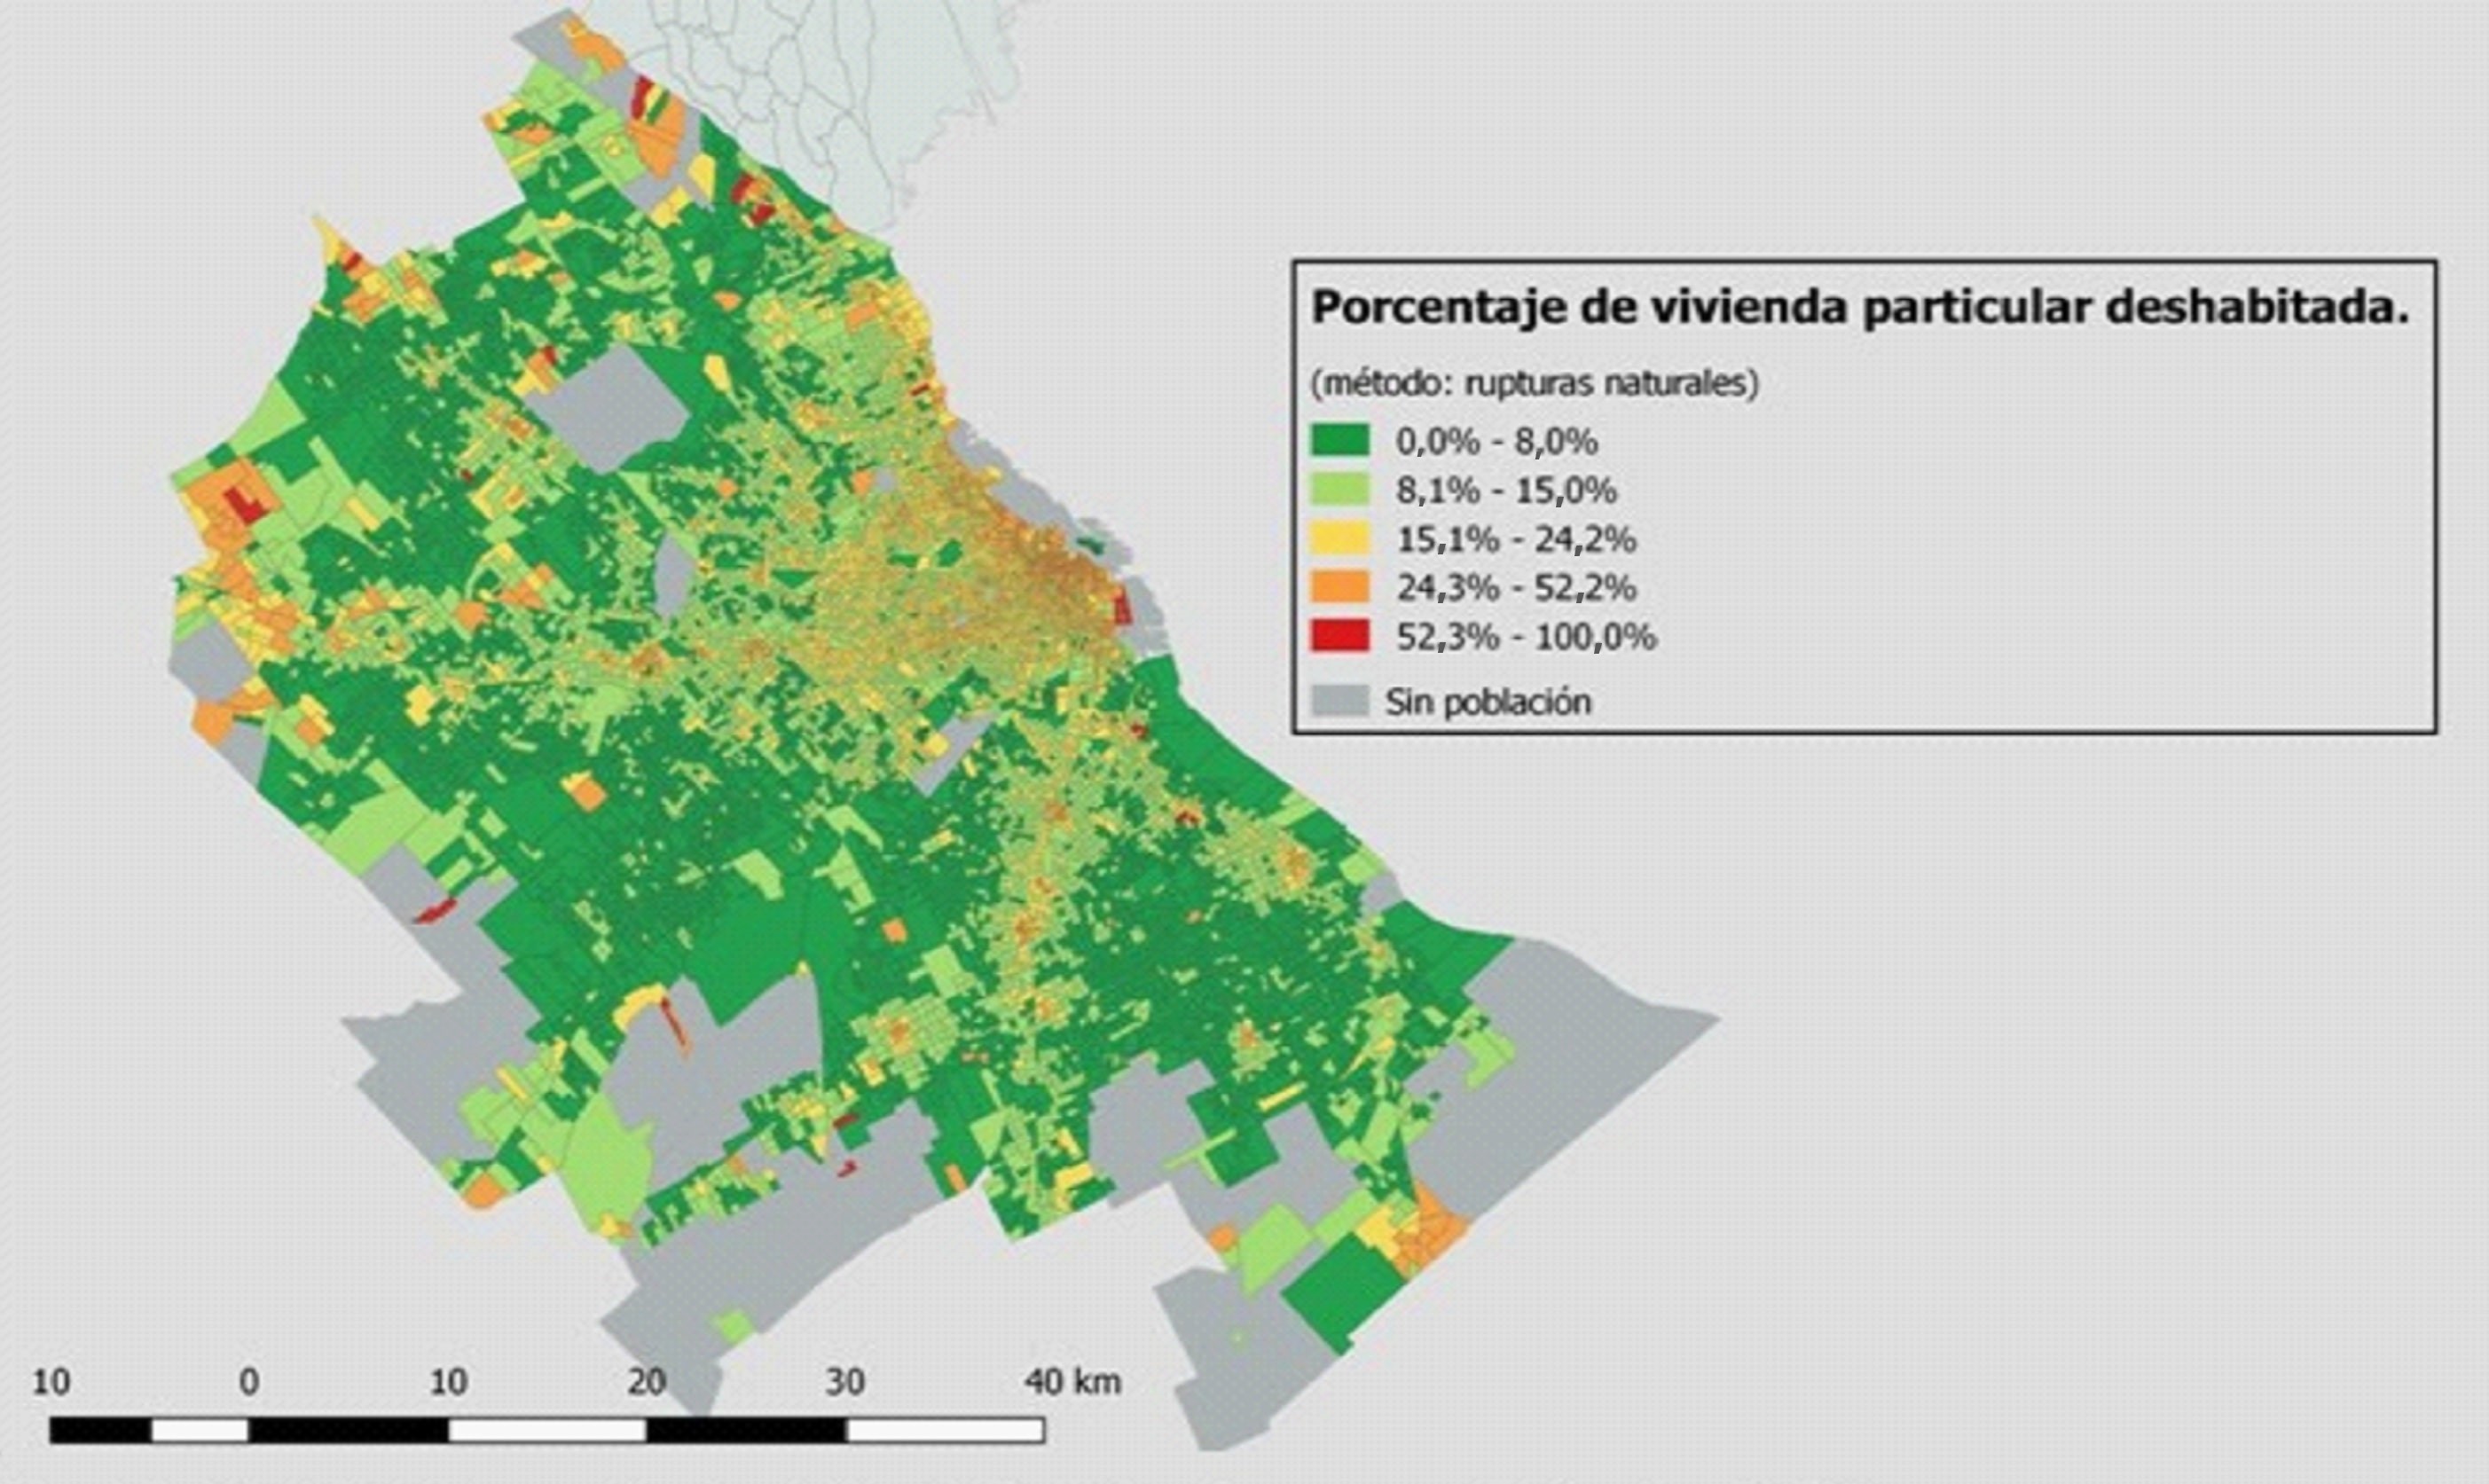 Porcentaje de vivienda particular deshabitada, por radio, GBA, 2010